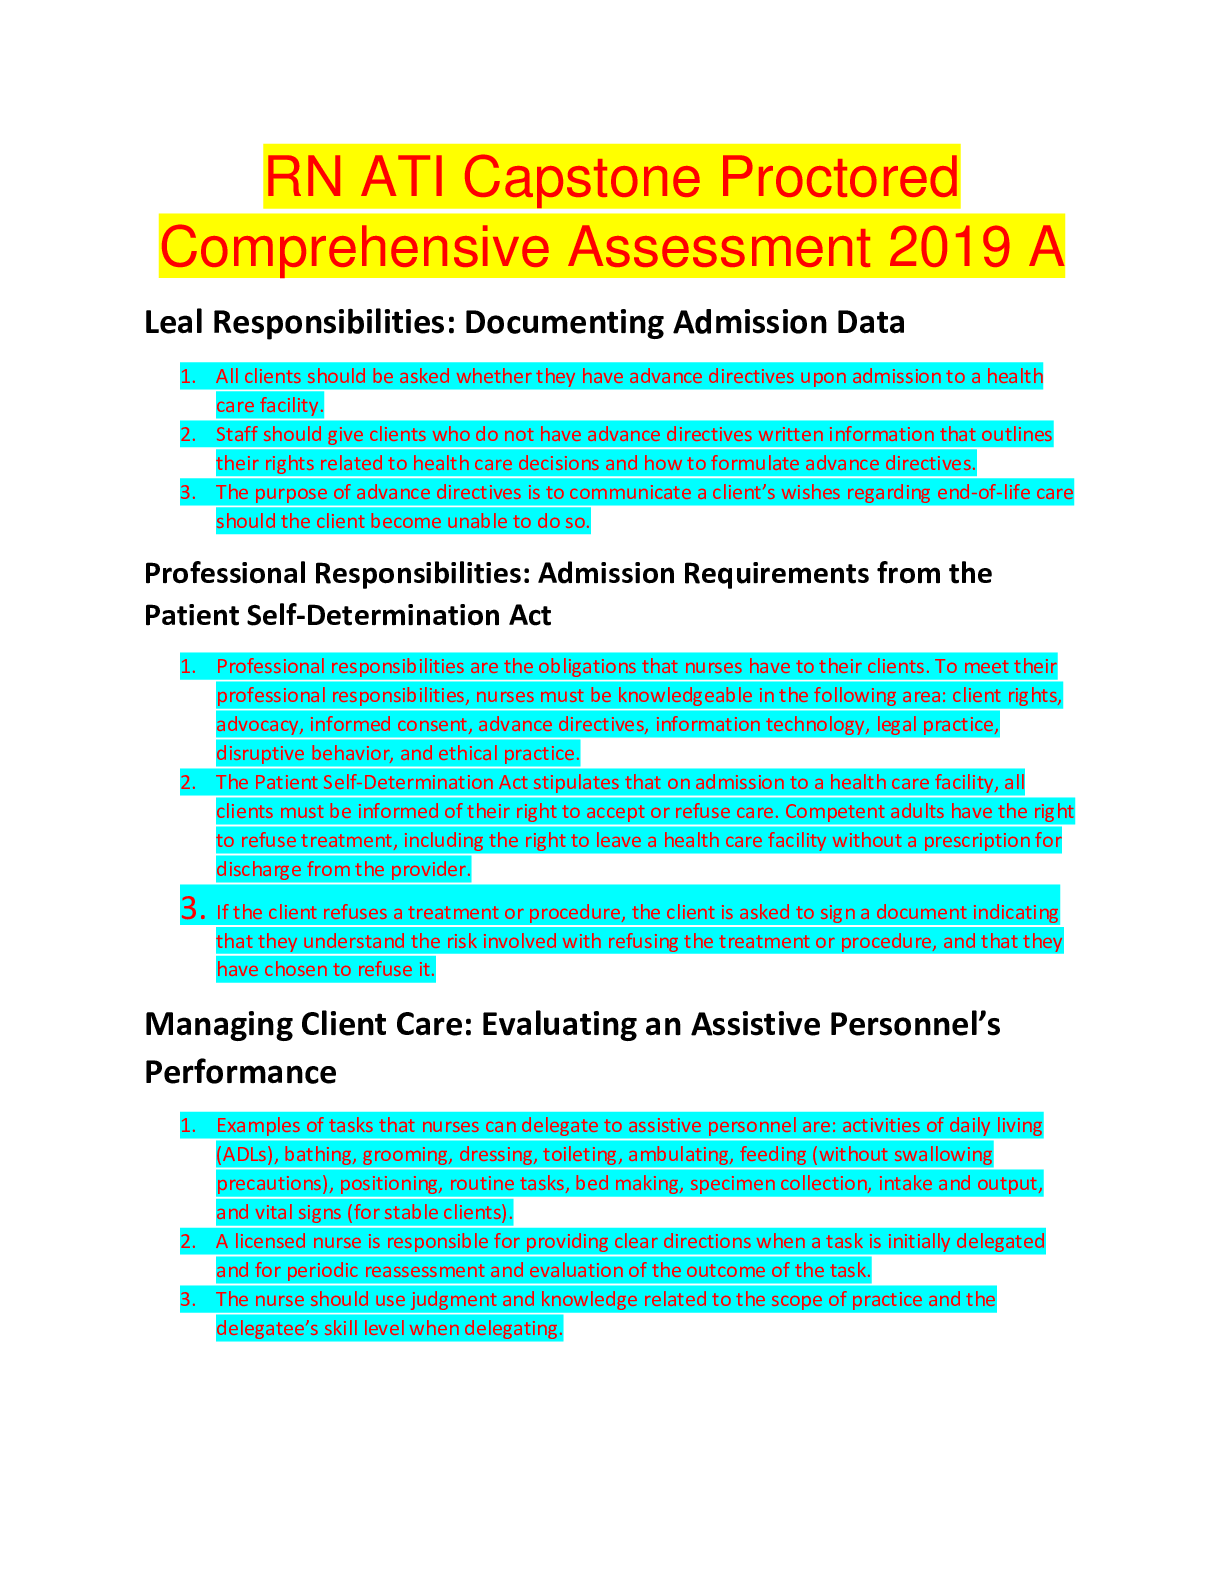 rn-ati-capstone-proctored-comprehensive-assessment-2019-a